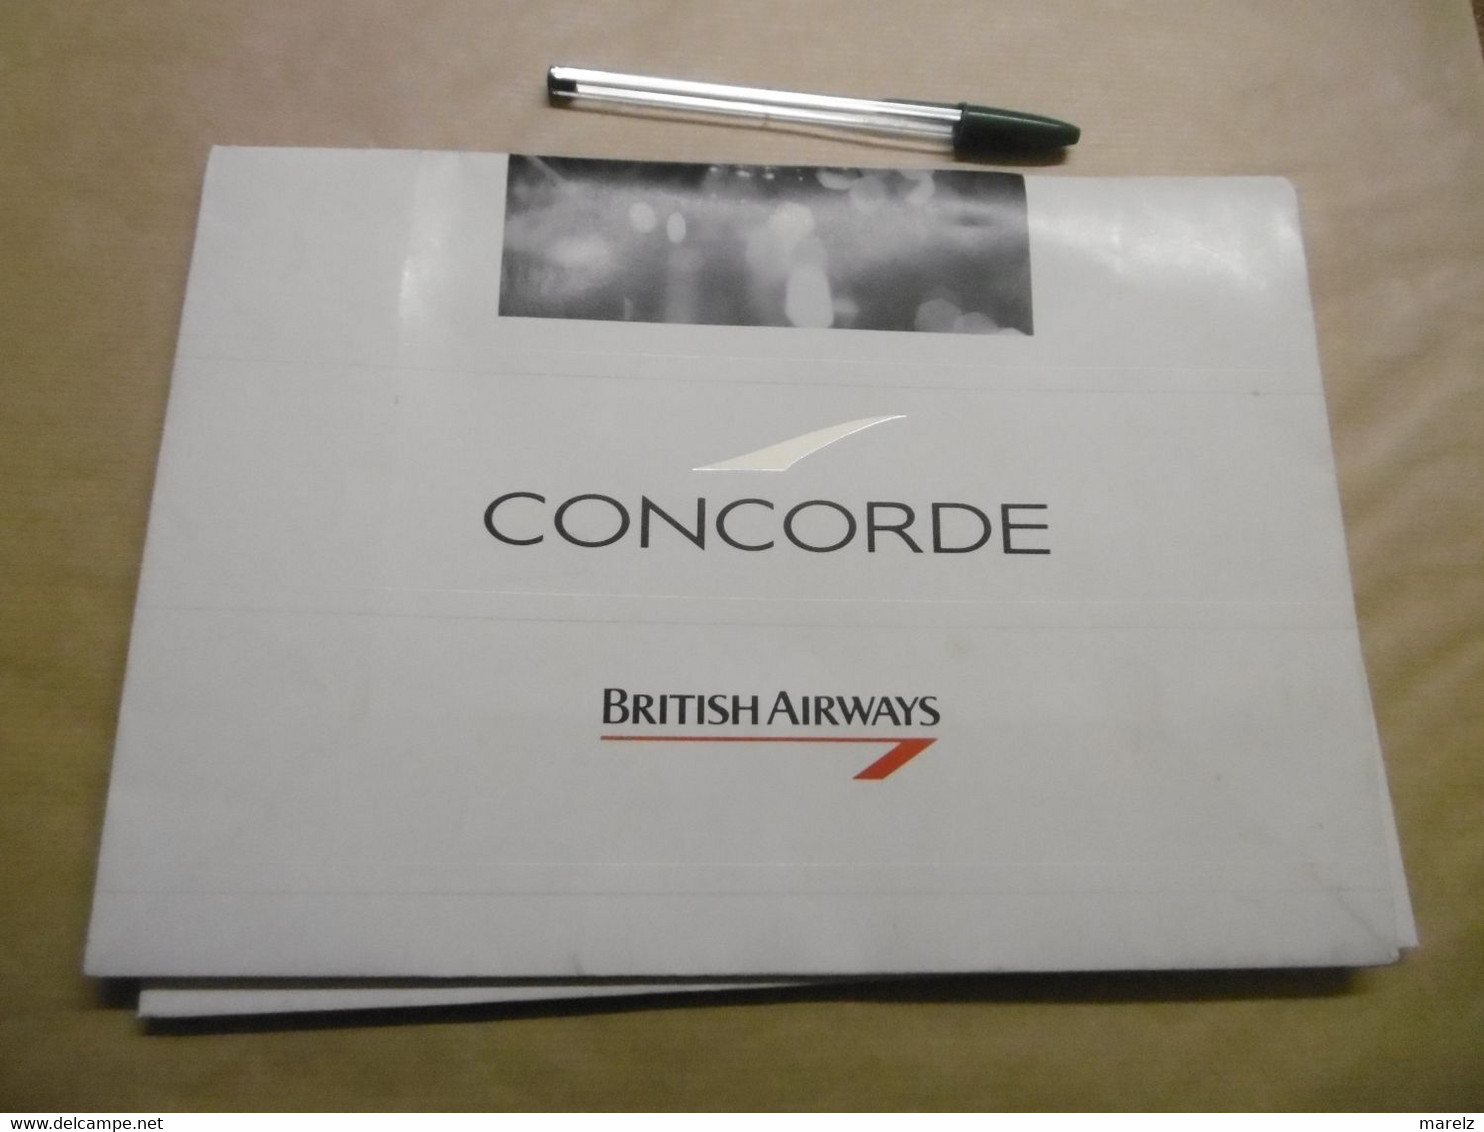 CONCORDE BRITISH AIRWAYS - Pochette Sac Papier Publicitaire KEENPACK - Publicité Cie Aérienne British Airways CONCORDE - Advertisements